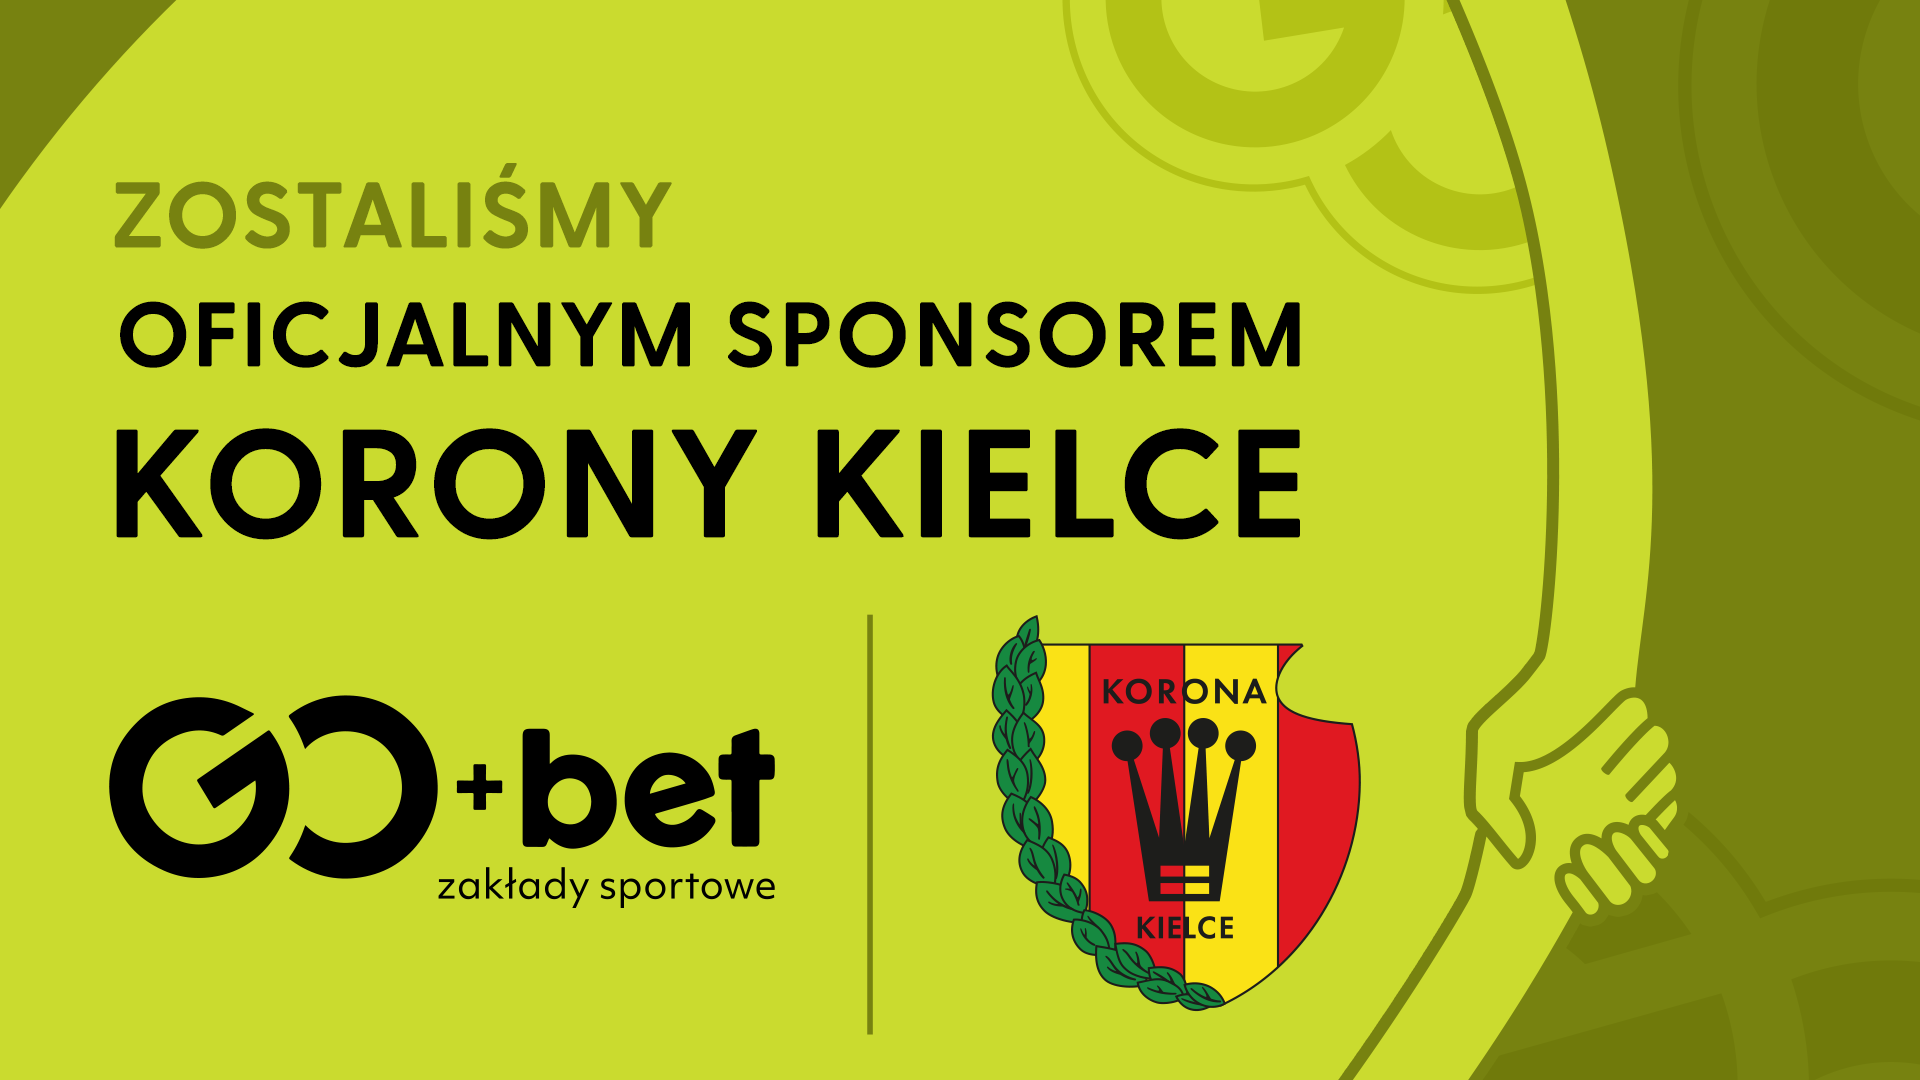 GO+bet oficjalnym sponsorem Korony Kielce